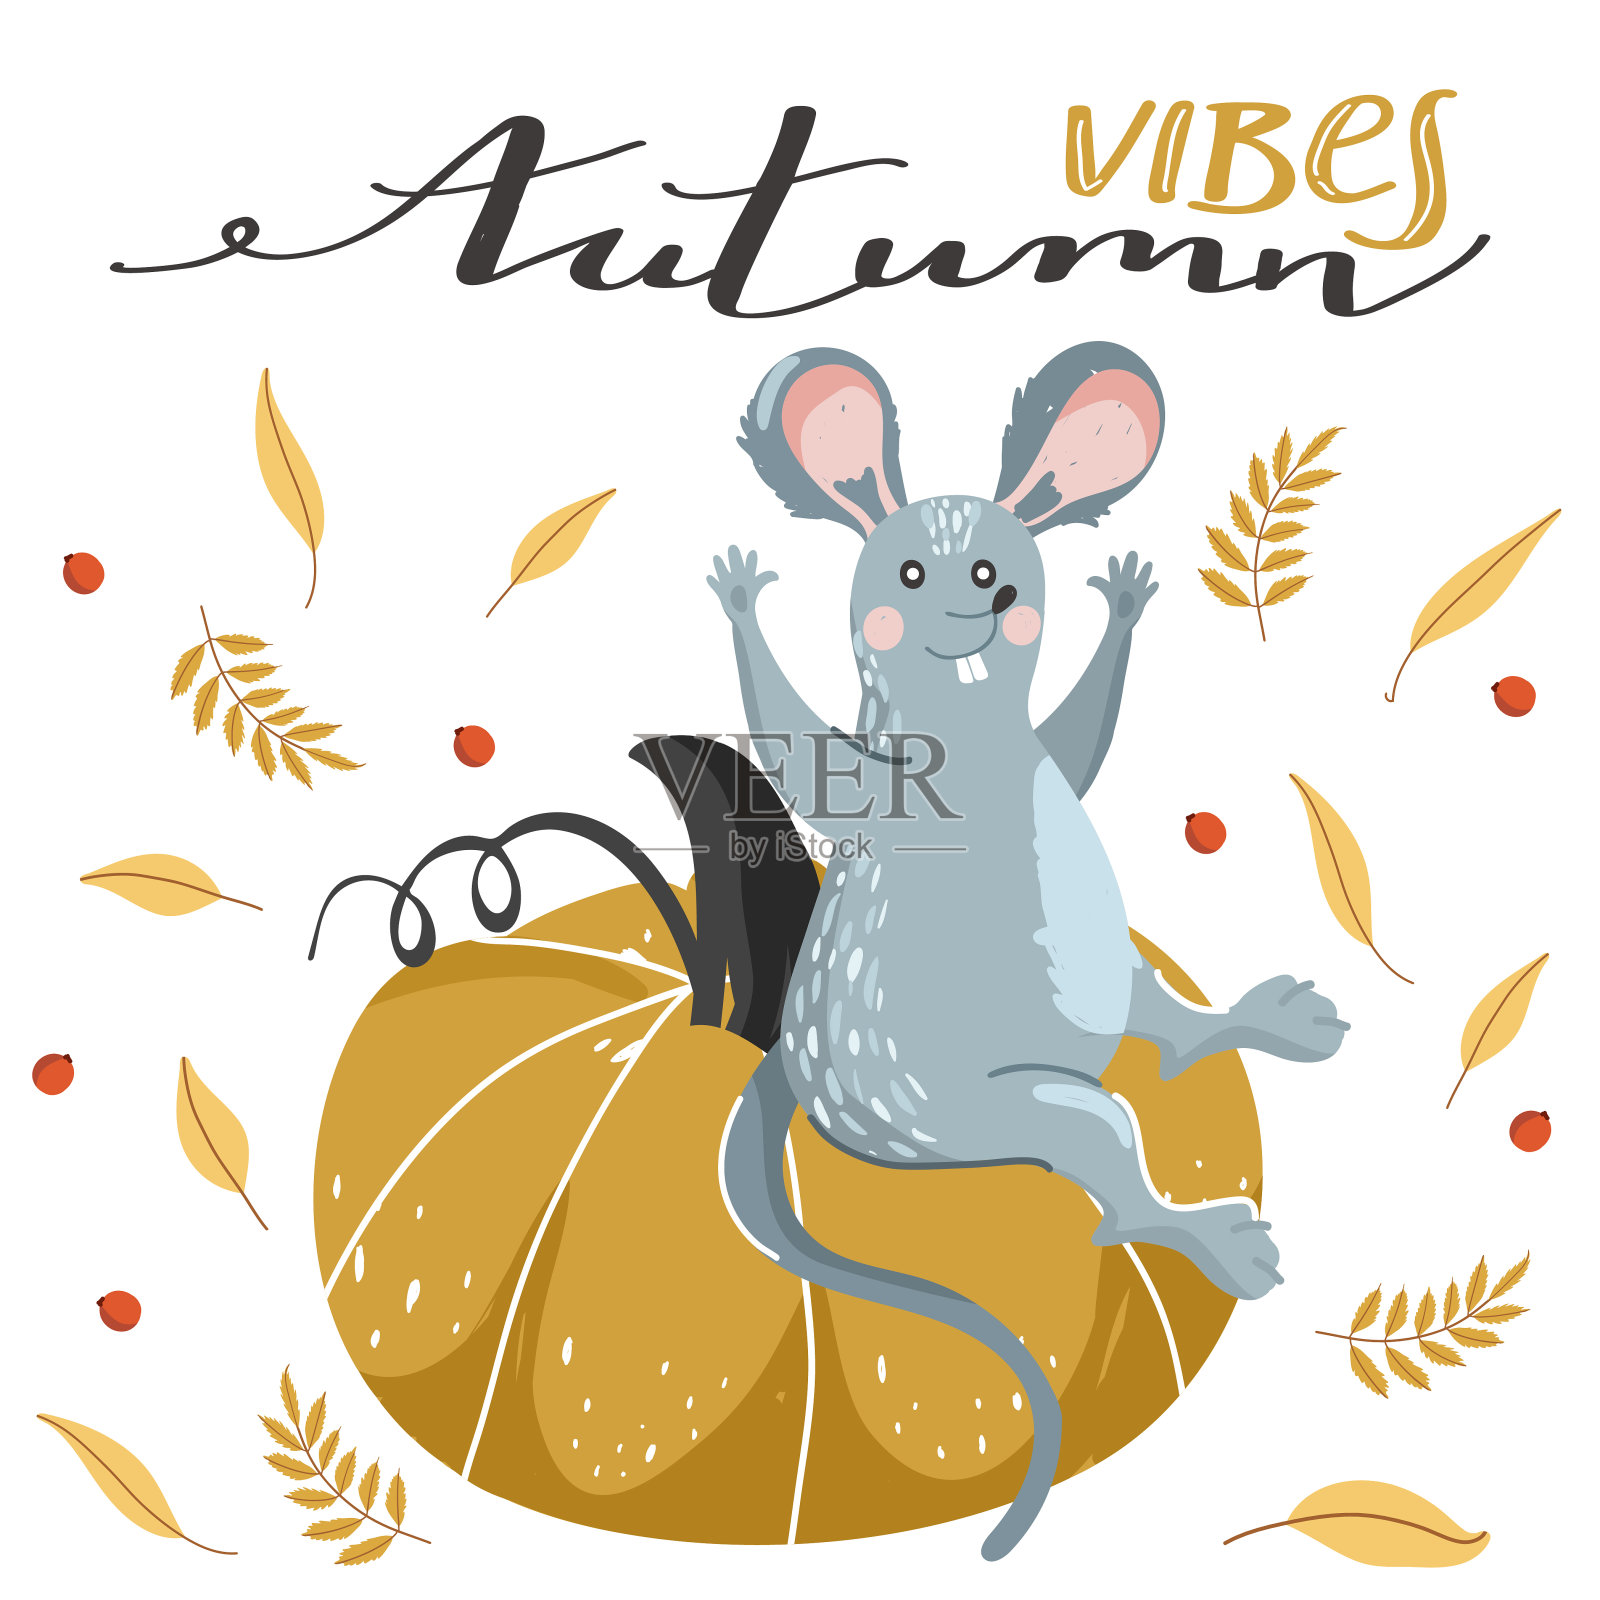 可爱的老鼠和南瓜和秋叶。时尚的排版标语设计“秋天的气息”标志。设计模板素材